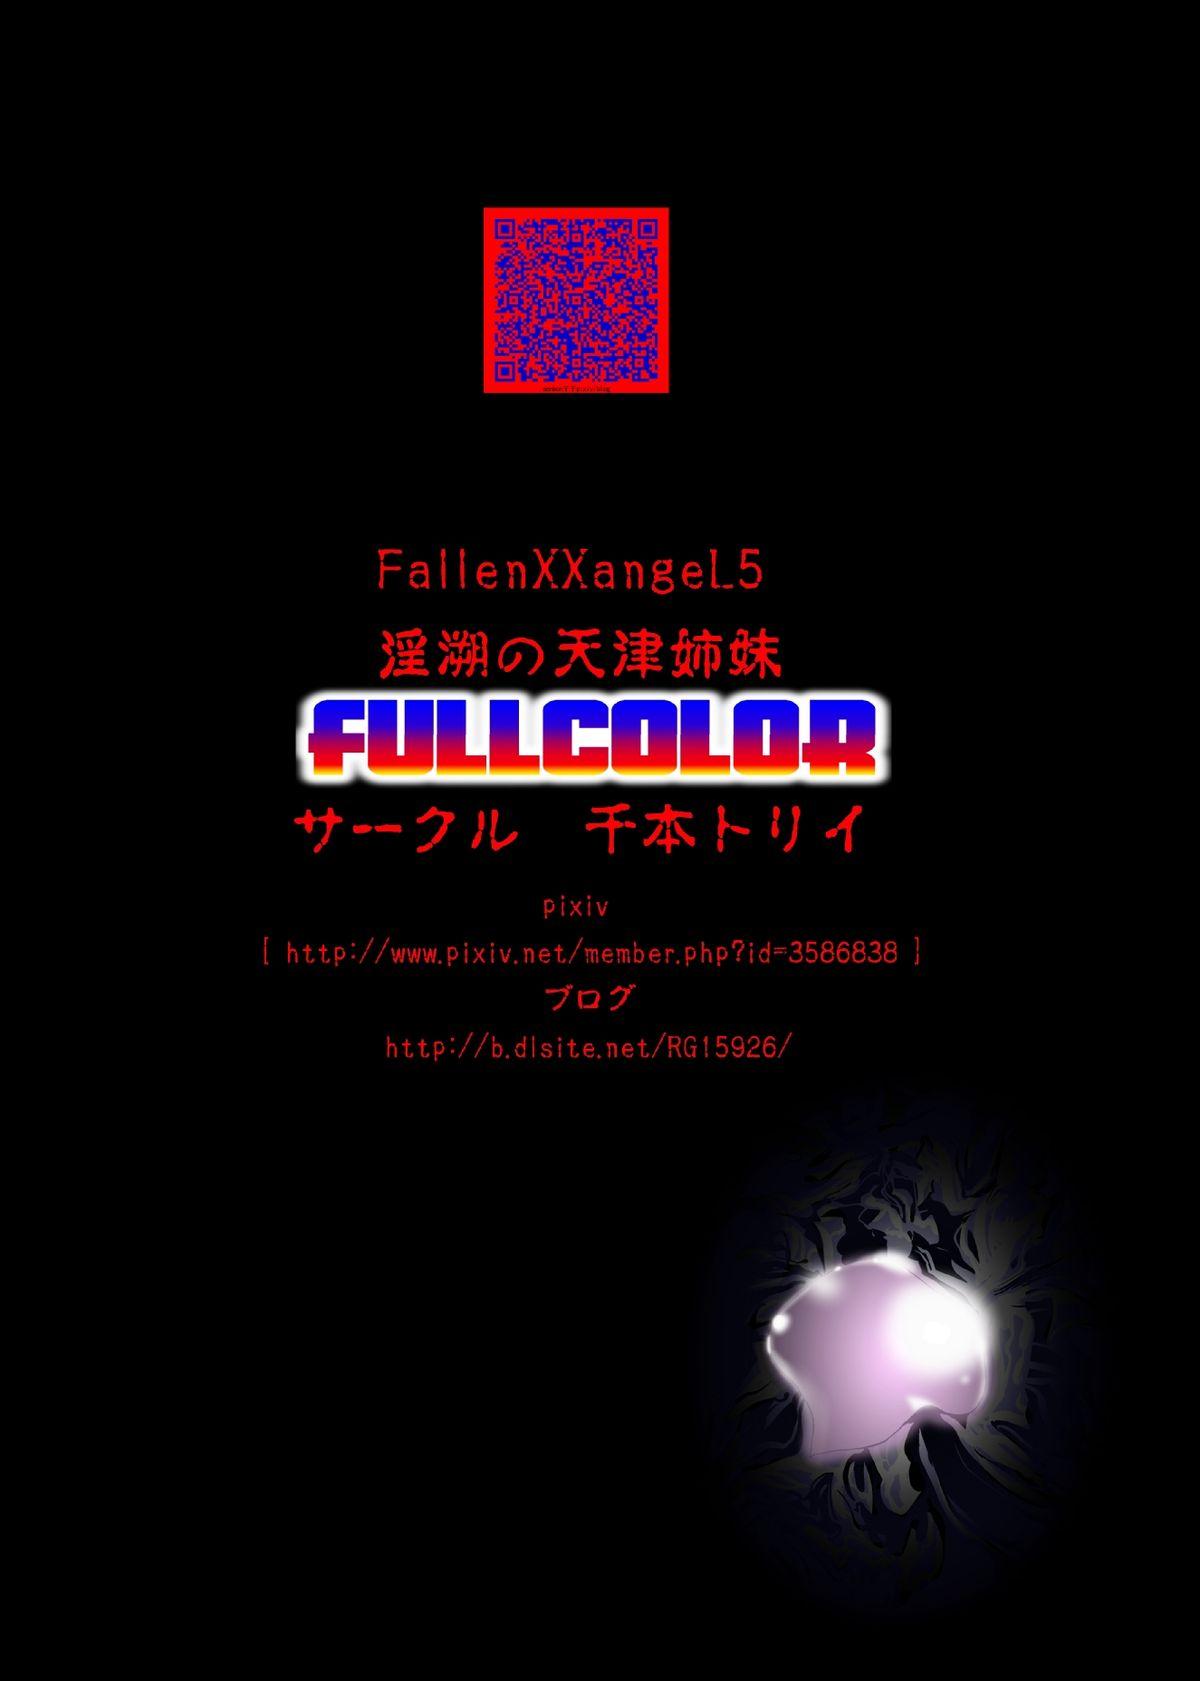 FallenXXangeL5 FULL COLOR 41